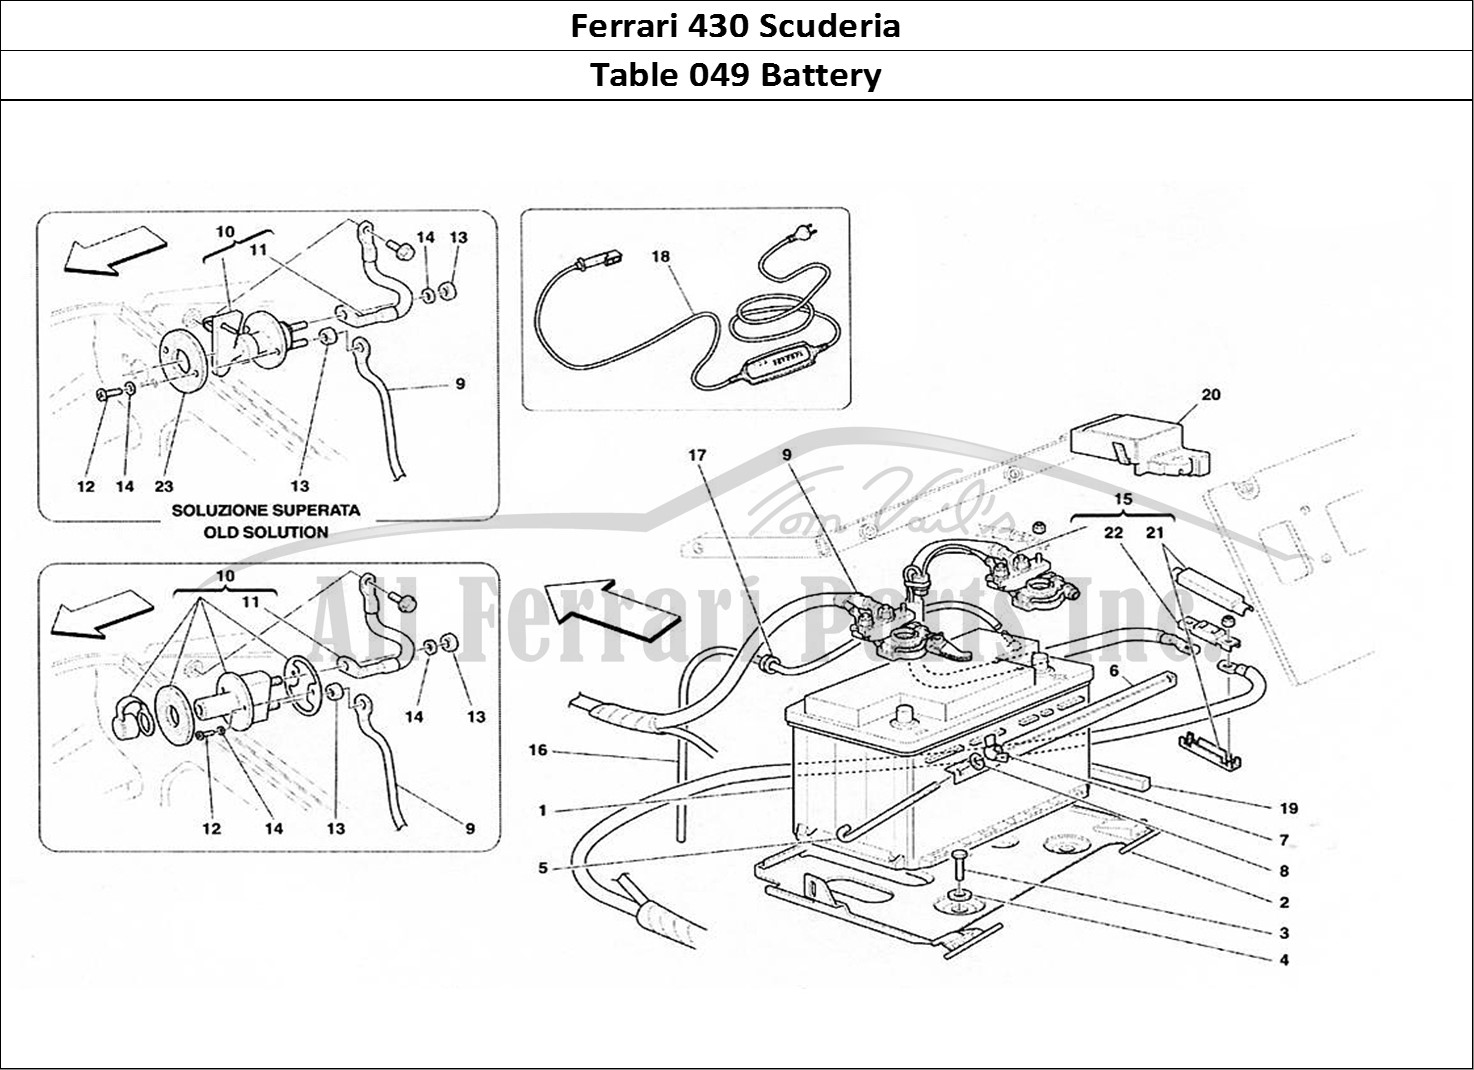 Ferrari Parts Ferrari 430 Scuderia Page 049 Battery